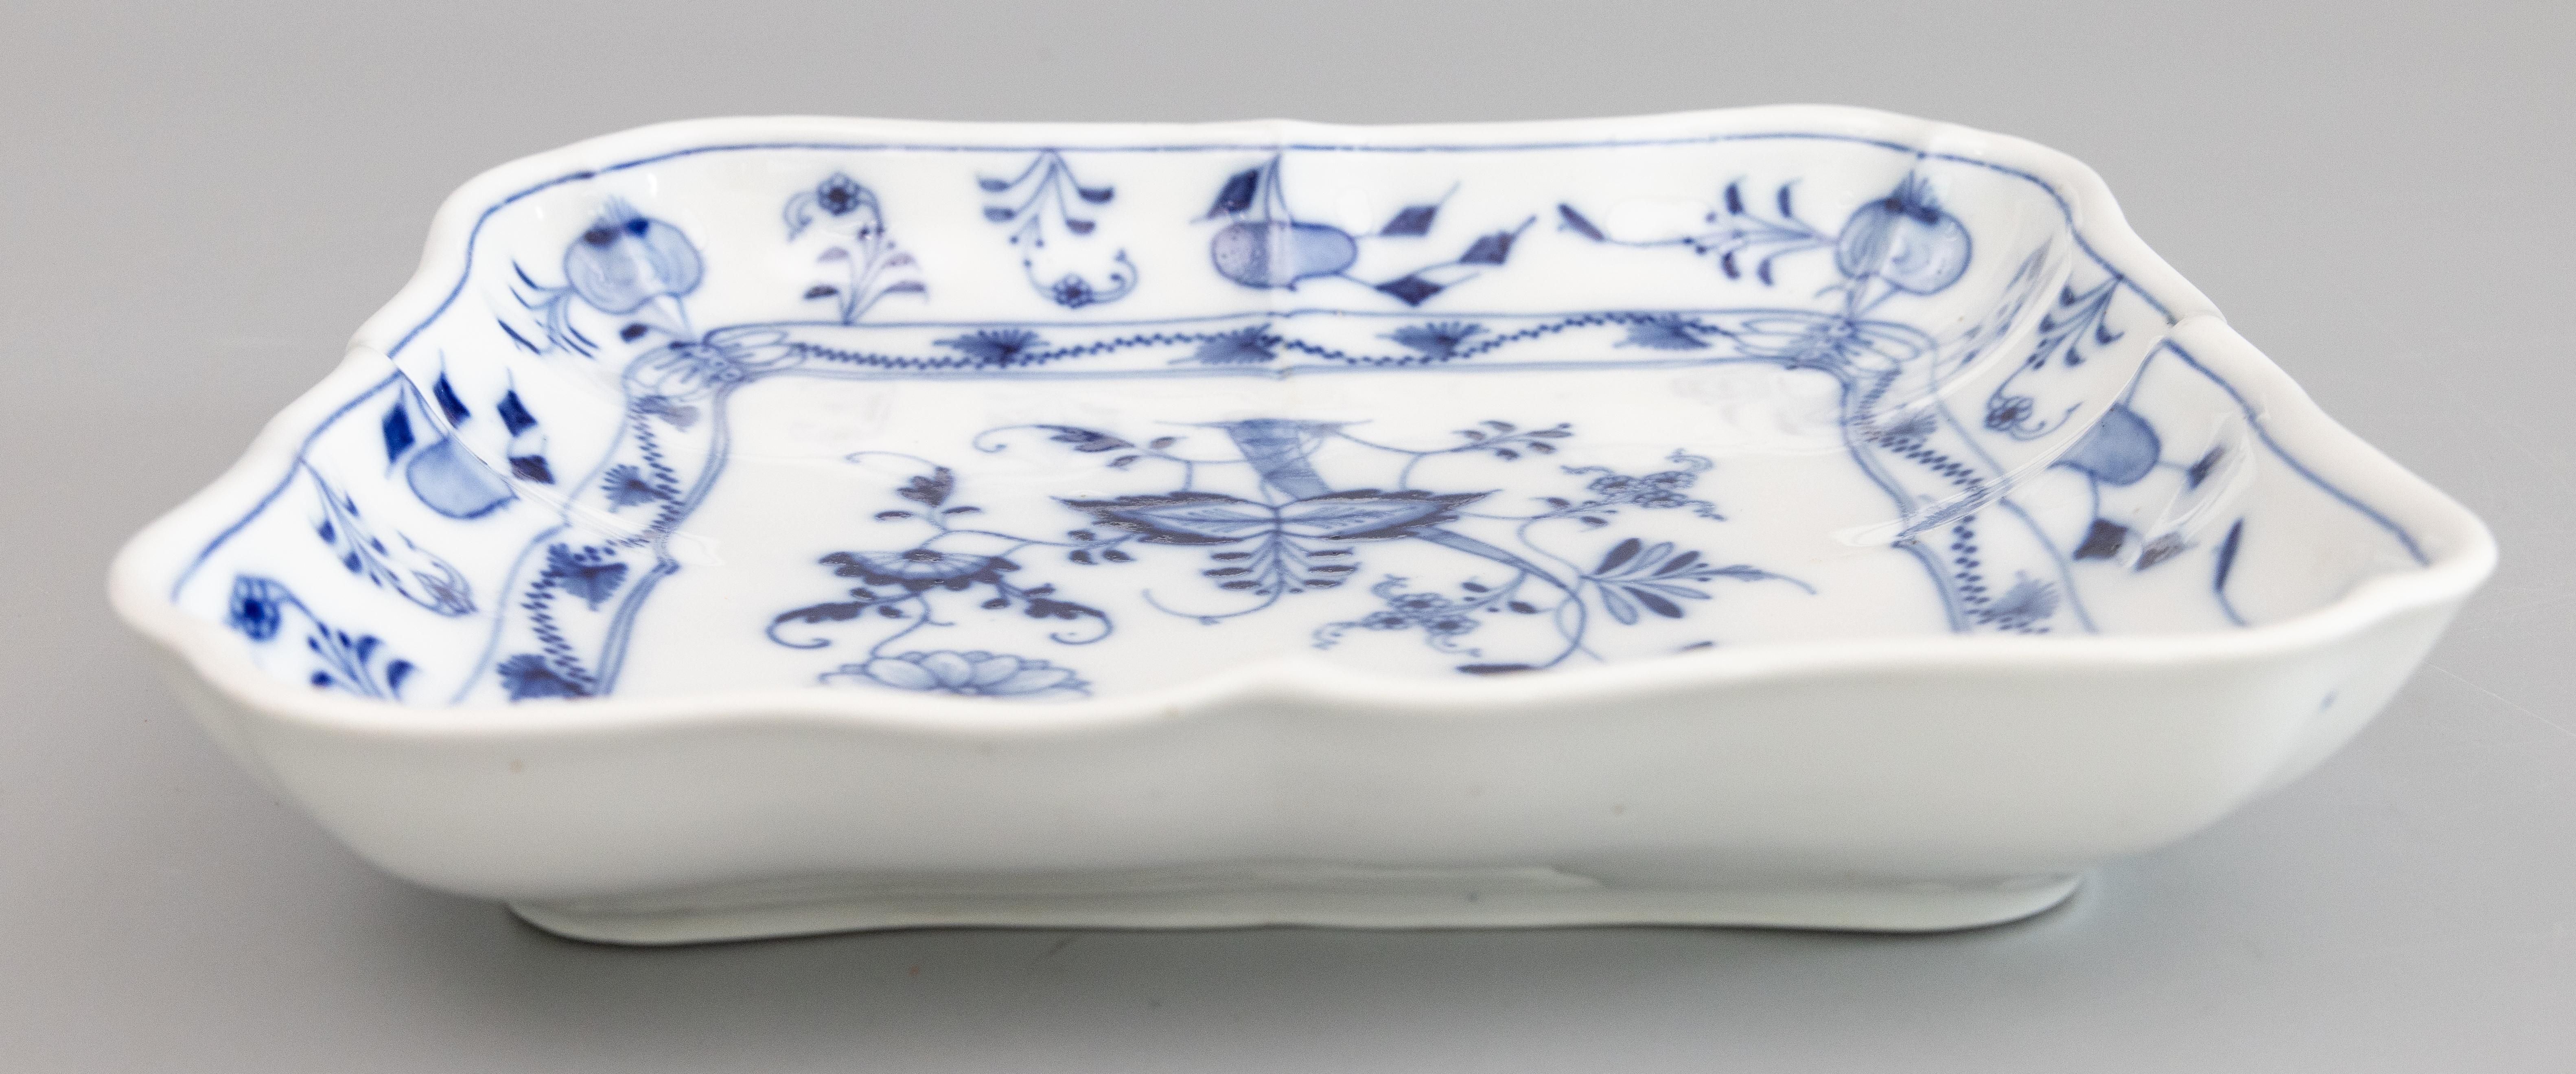 German Antique Meissen Blue Onion Square Scalloped Porcelain Dish For Sale